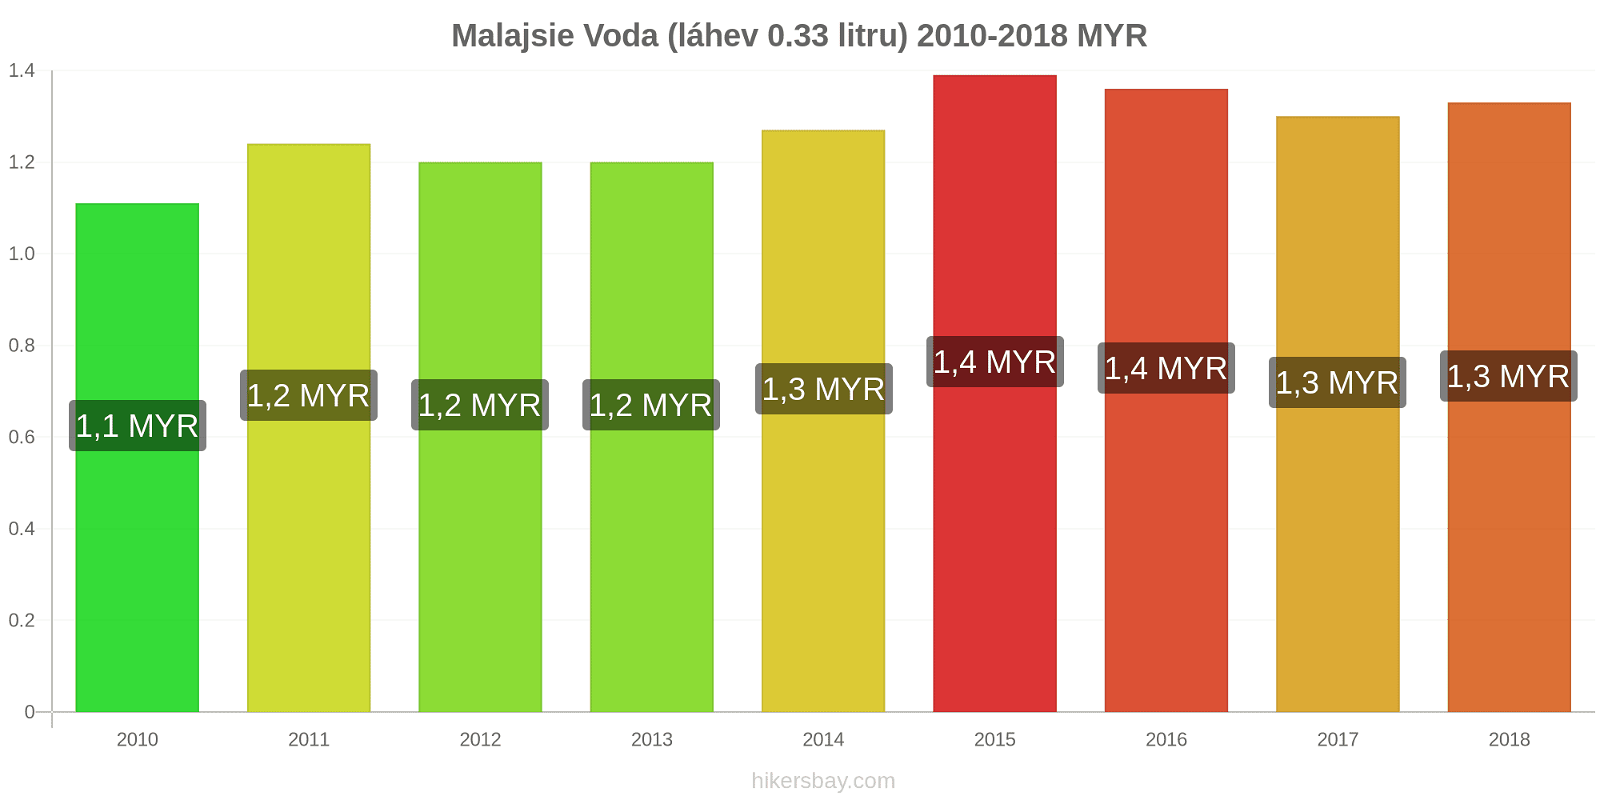 Malajsie změny cen Voda (láhev 0.33 litru) hikersbay.com